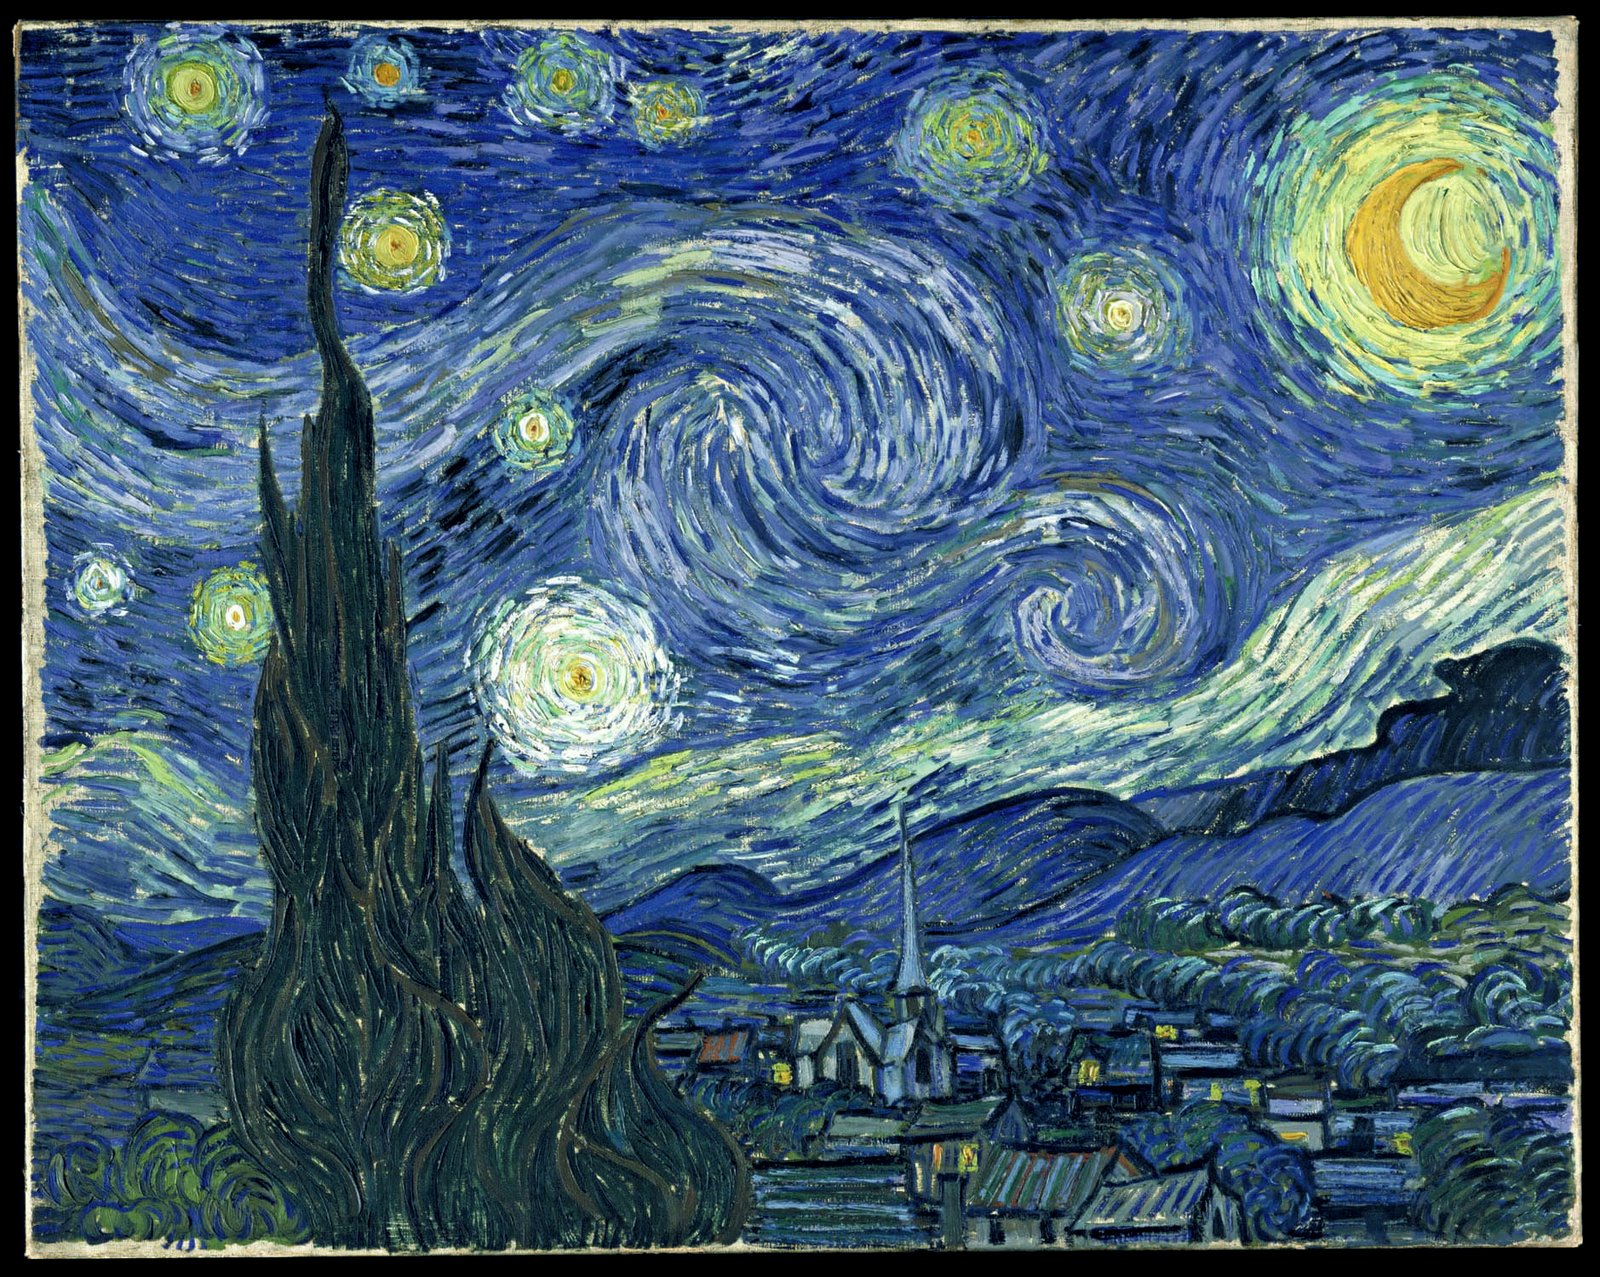 La nuit étoilée de Van Gogh : analyse de cette peinture célèbre